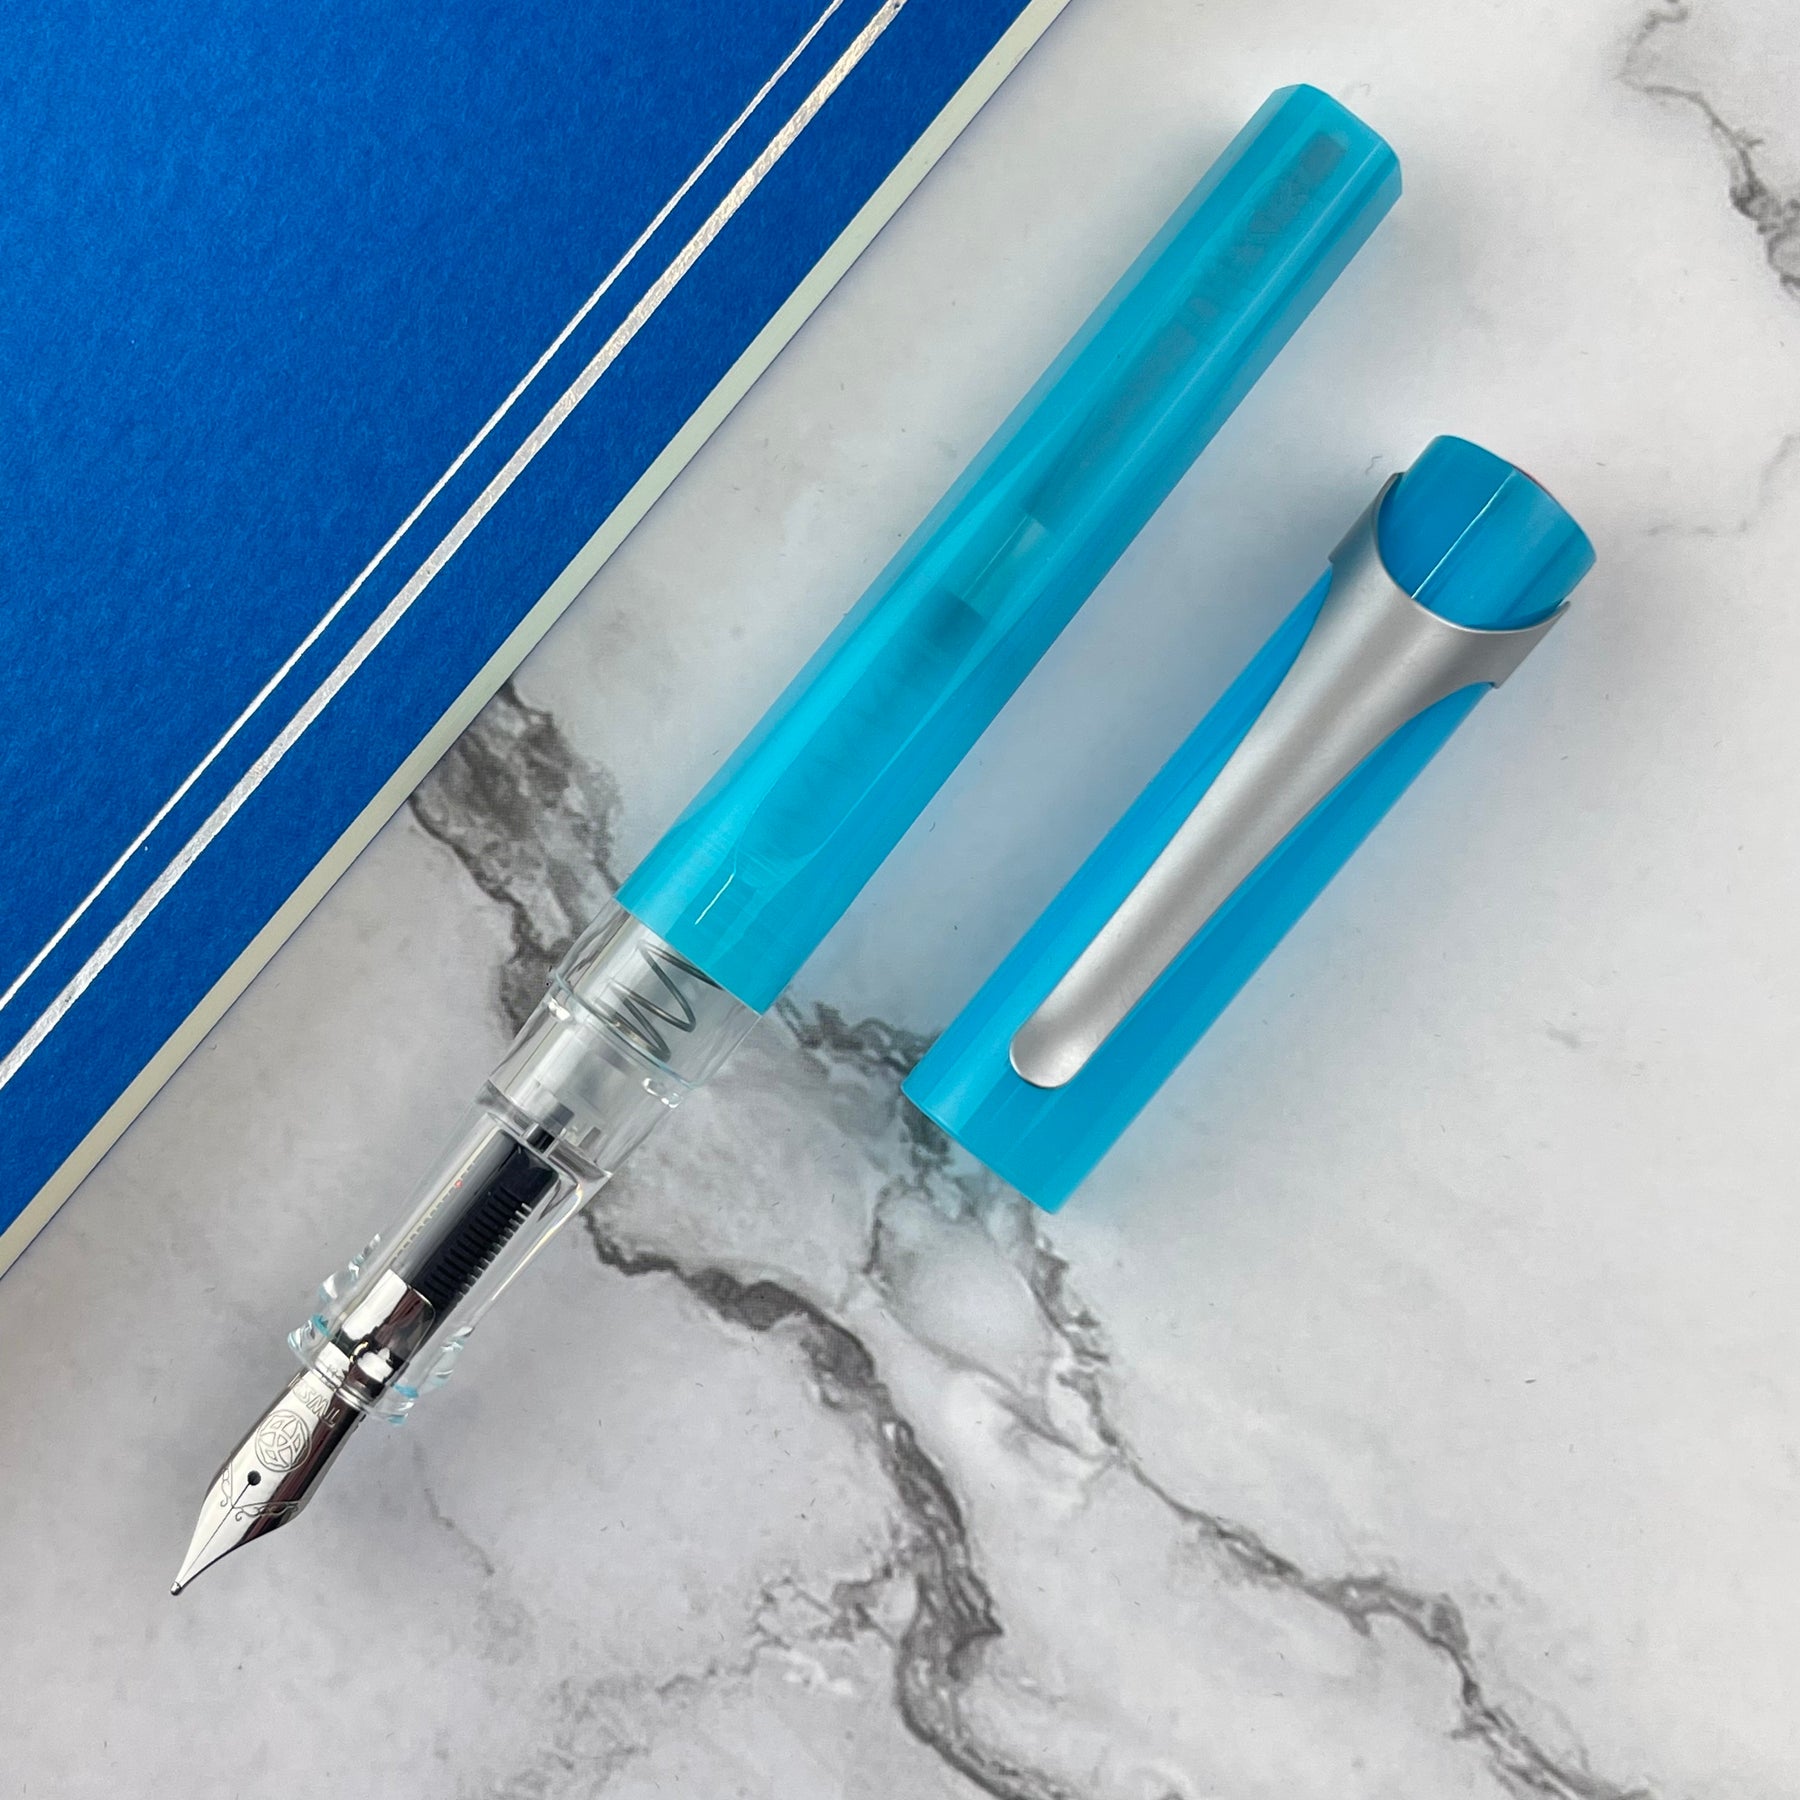 TWSBI Swipe Fountain Pen - Ice Blue - Broad